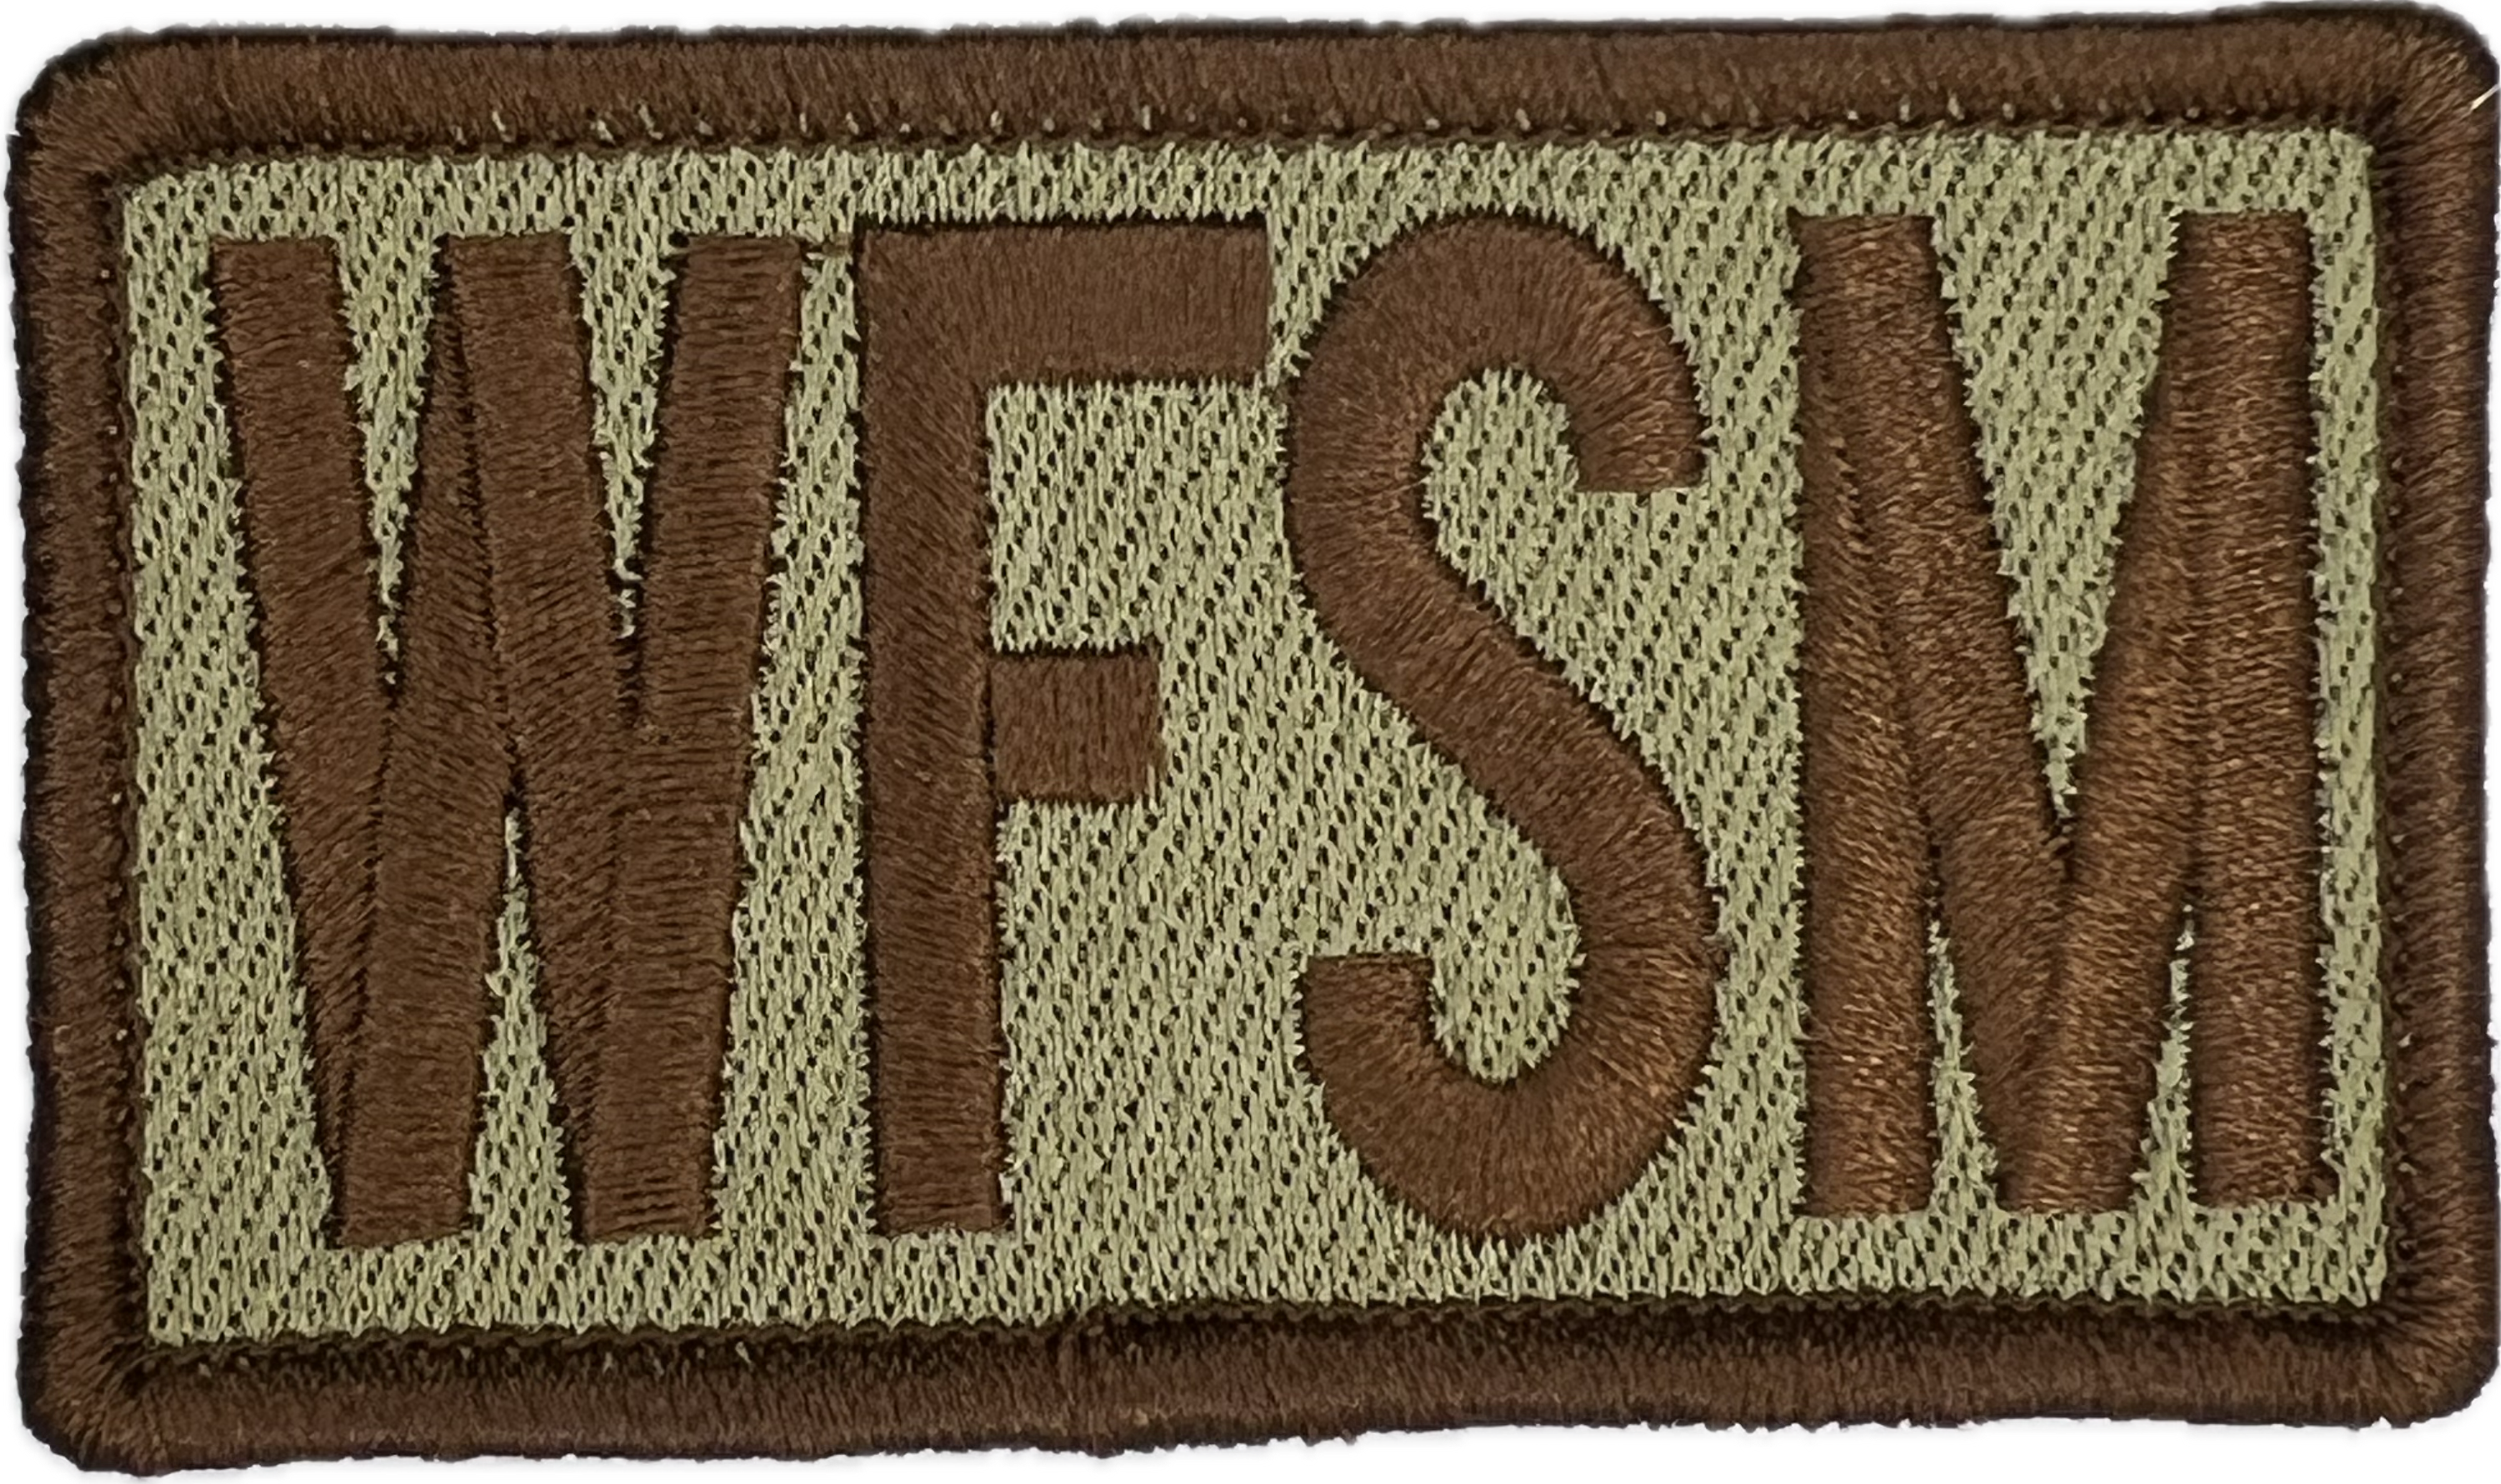 WFSM - Duty Identifier Patch